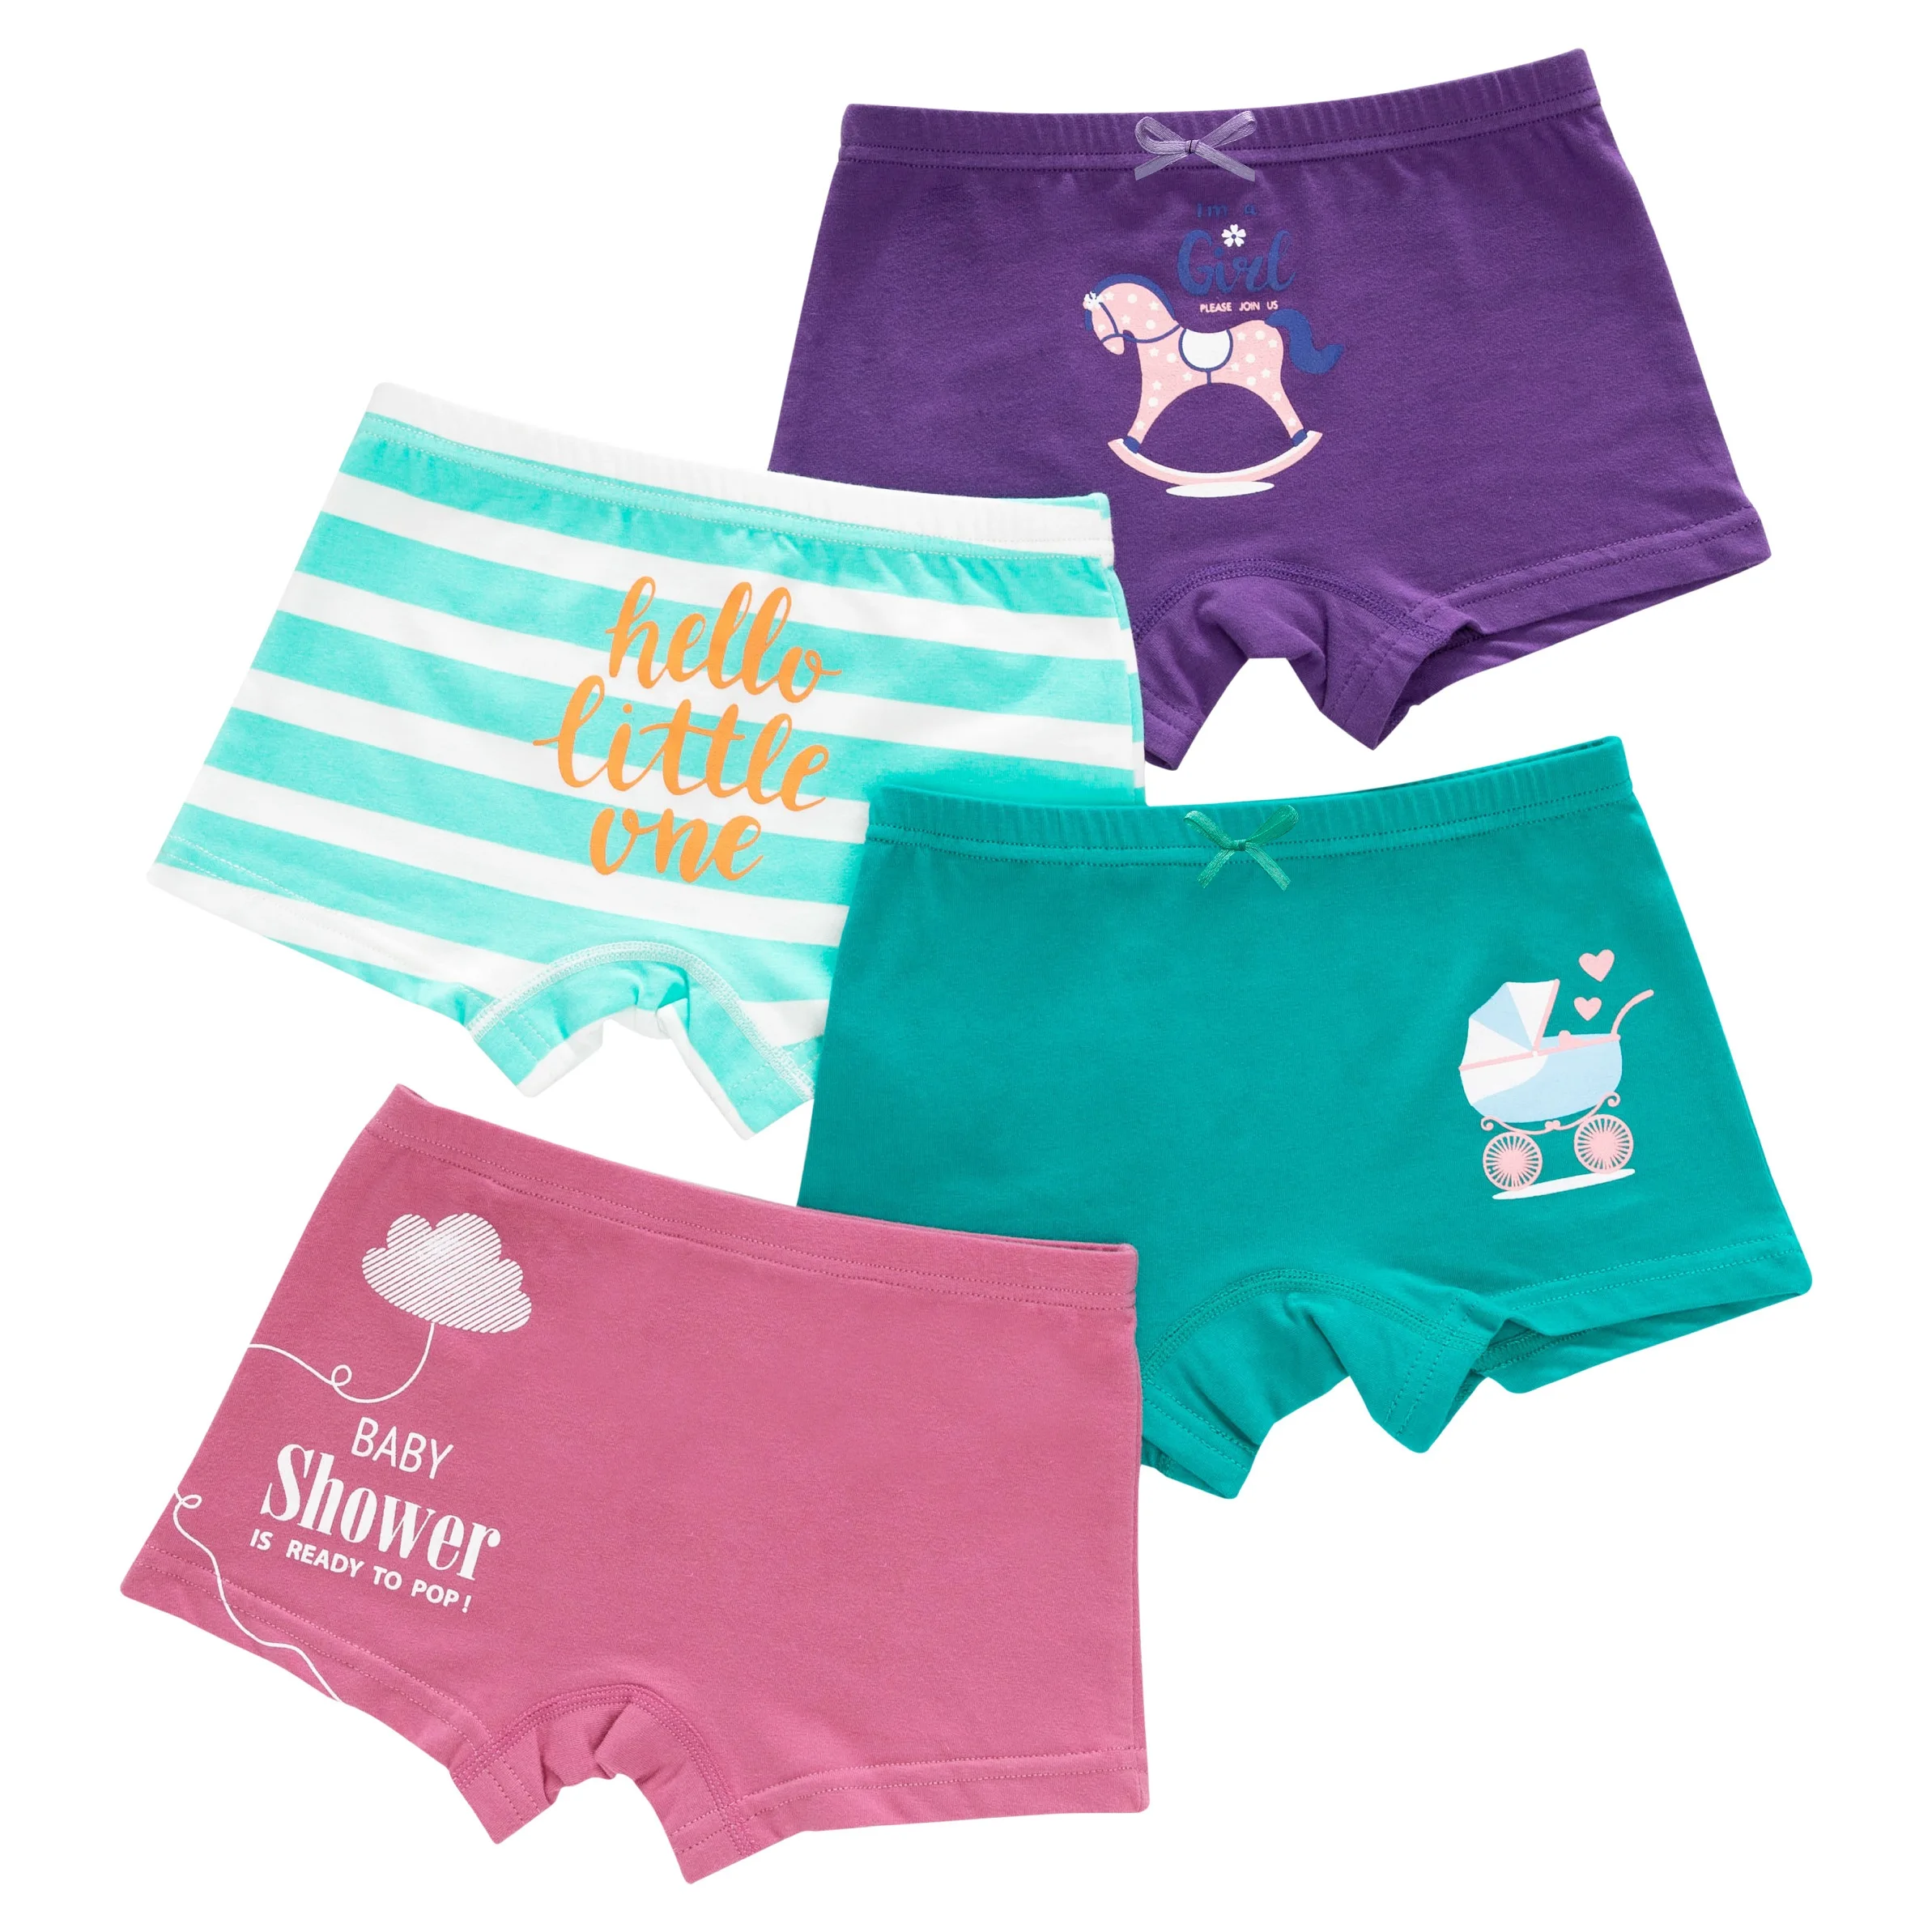 
Underwear children 2021 new design girls briefs 100%cotton organic children girls underwear 